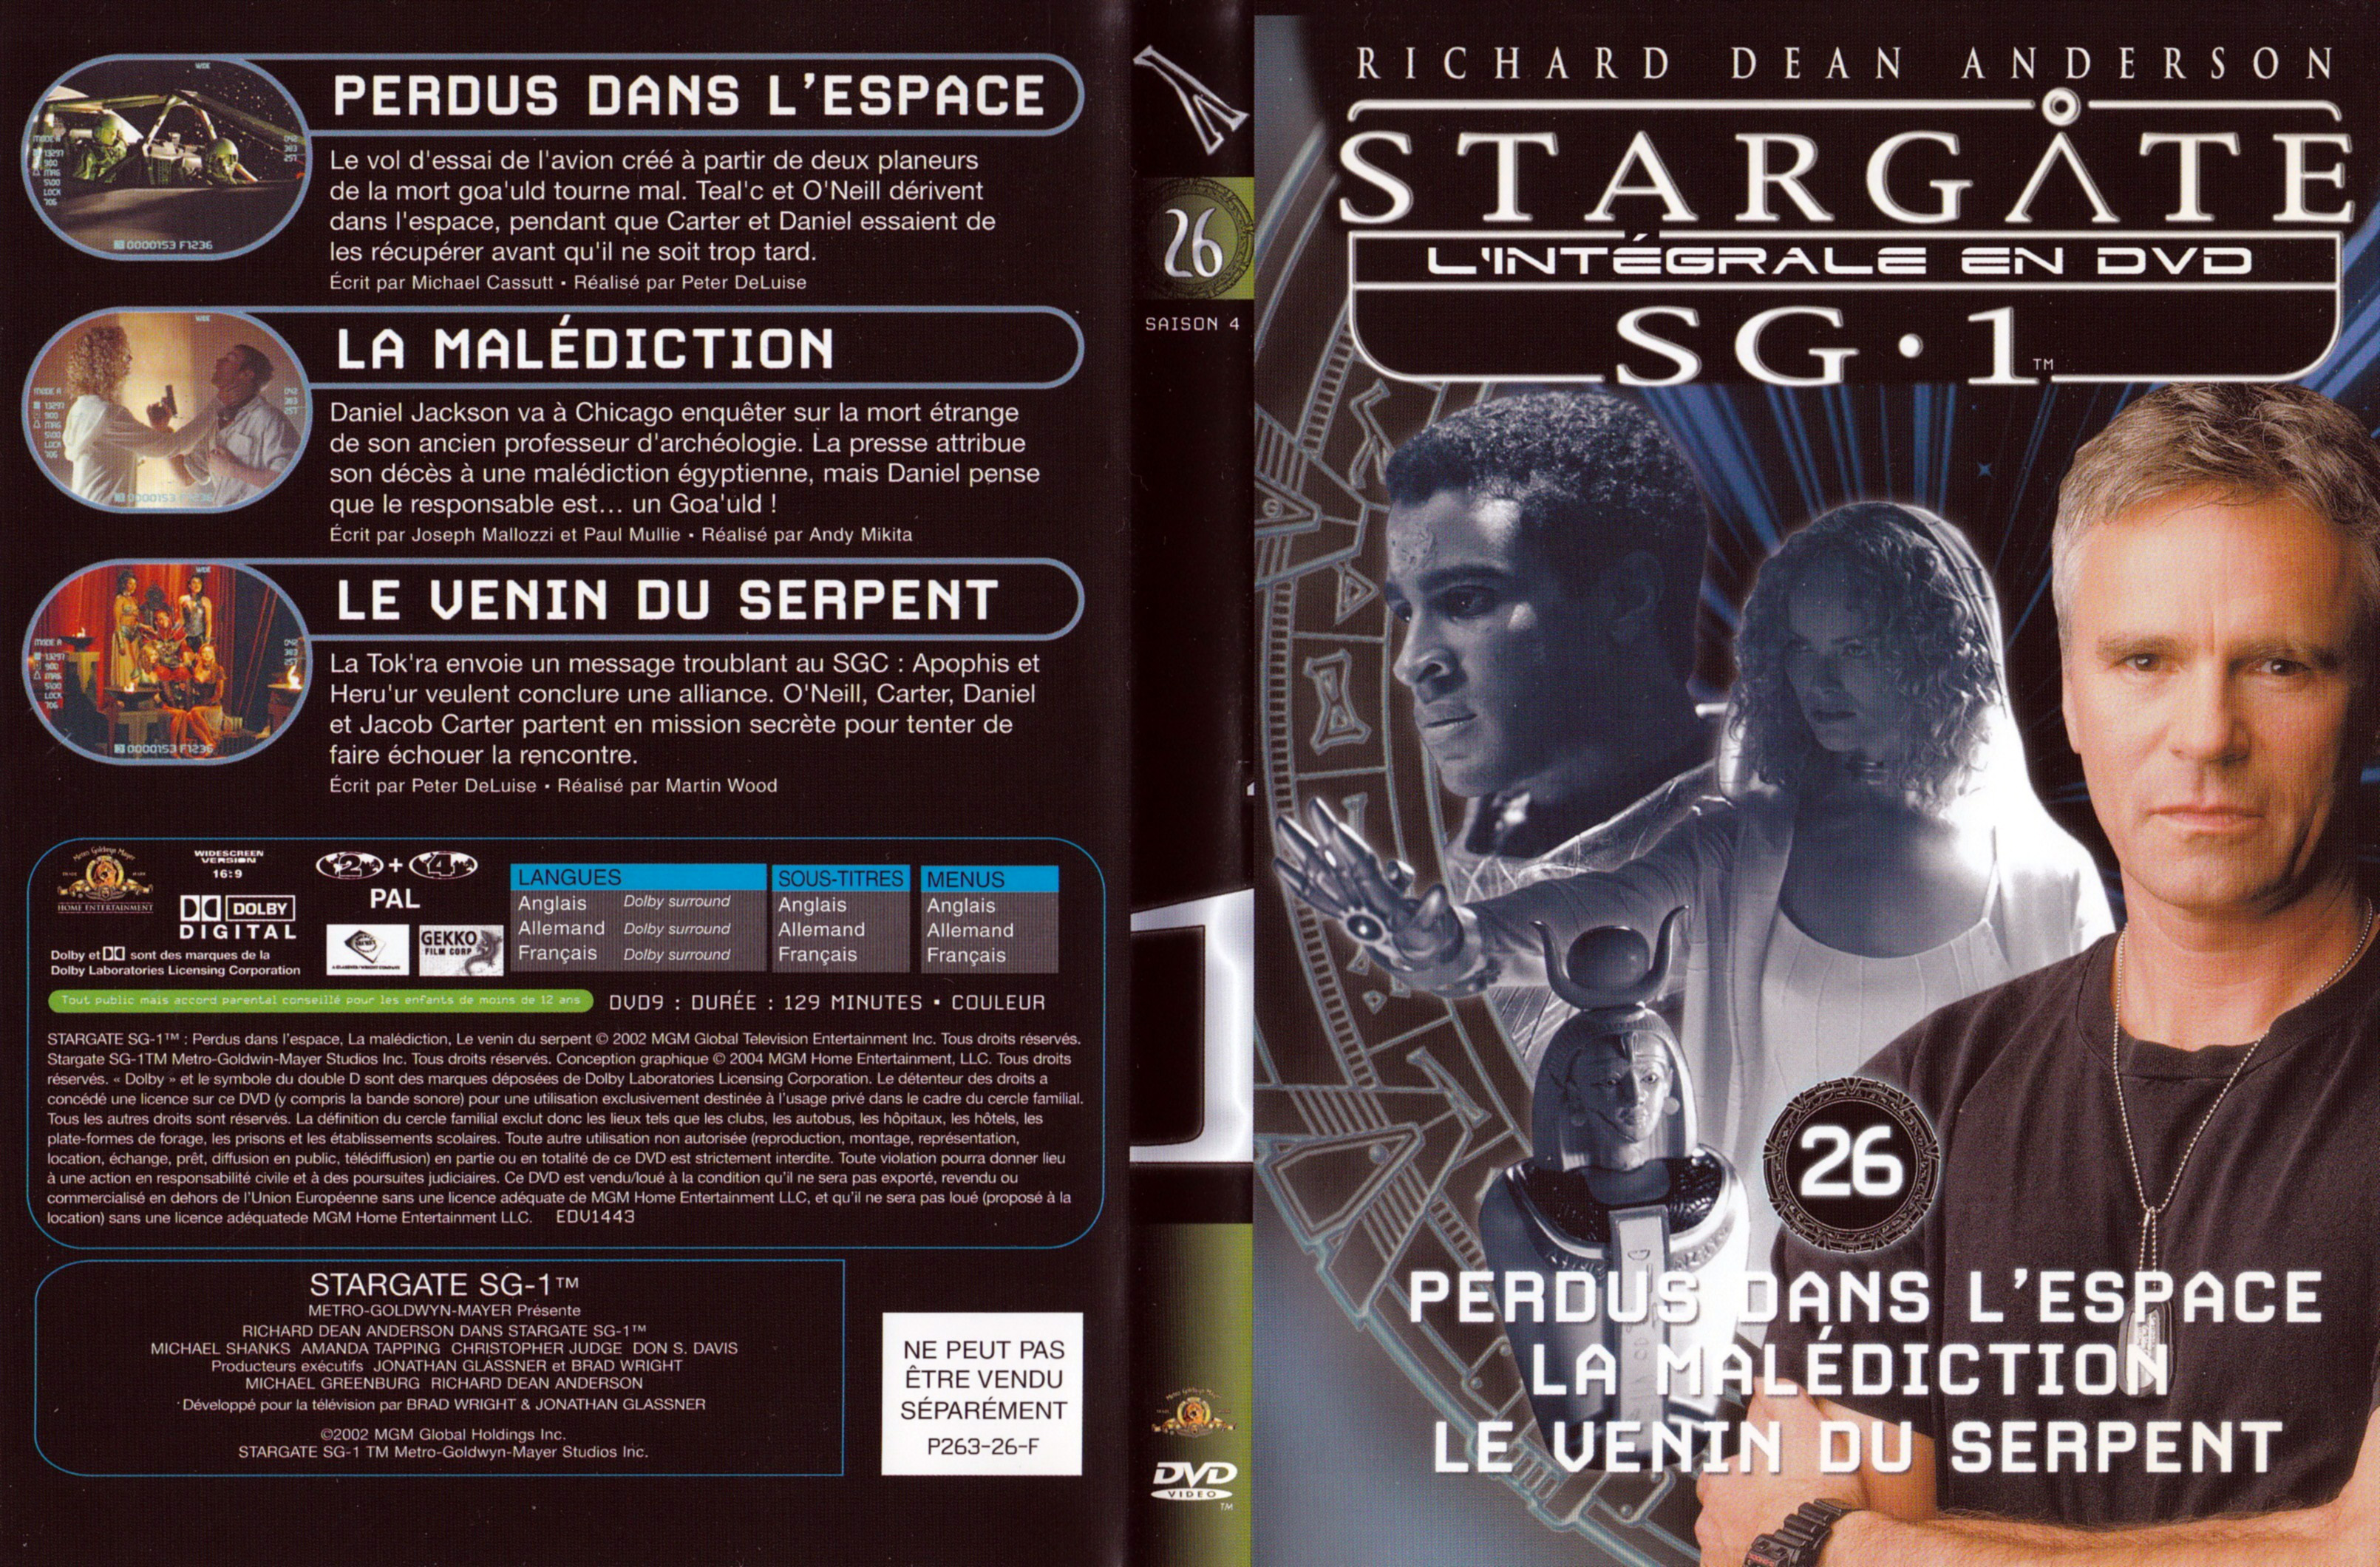 Jaquette DVD Stargate SG1 Intgrale Saison 4 vol 26